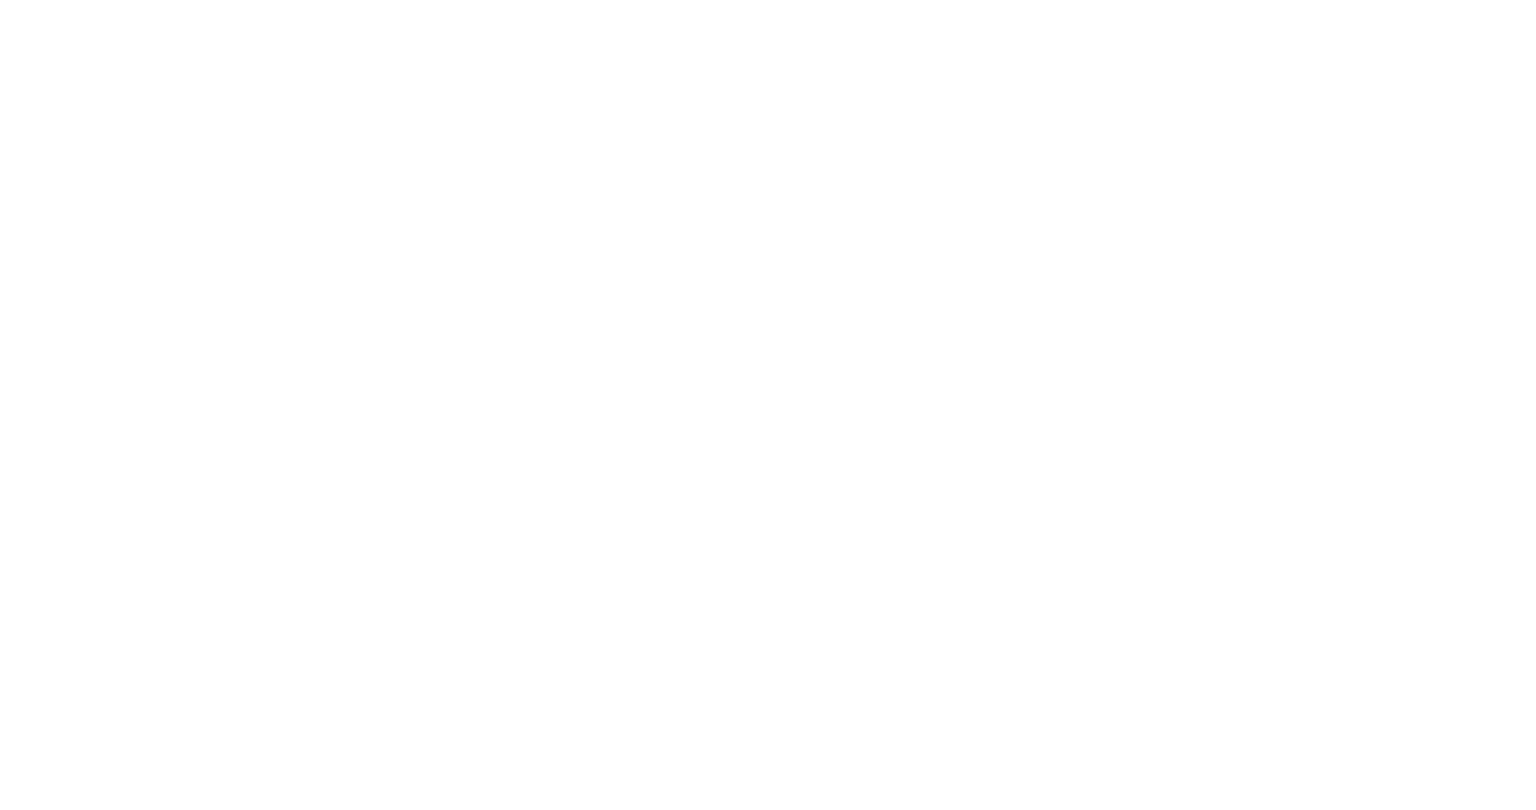 Z-Detector on black background​